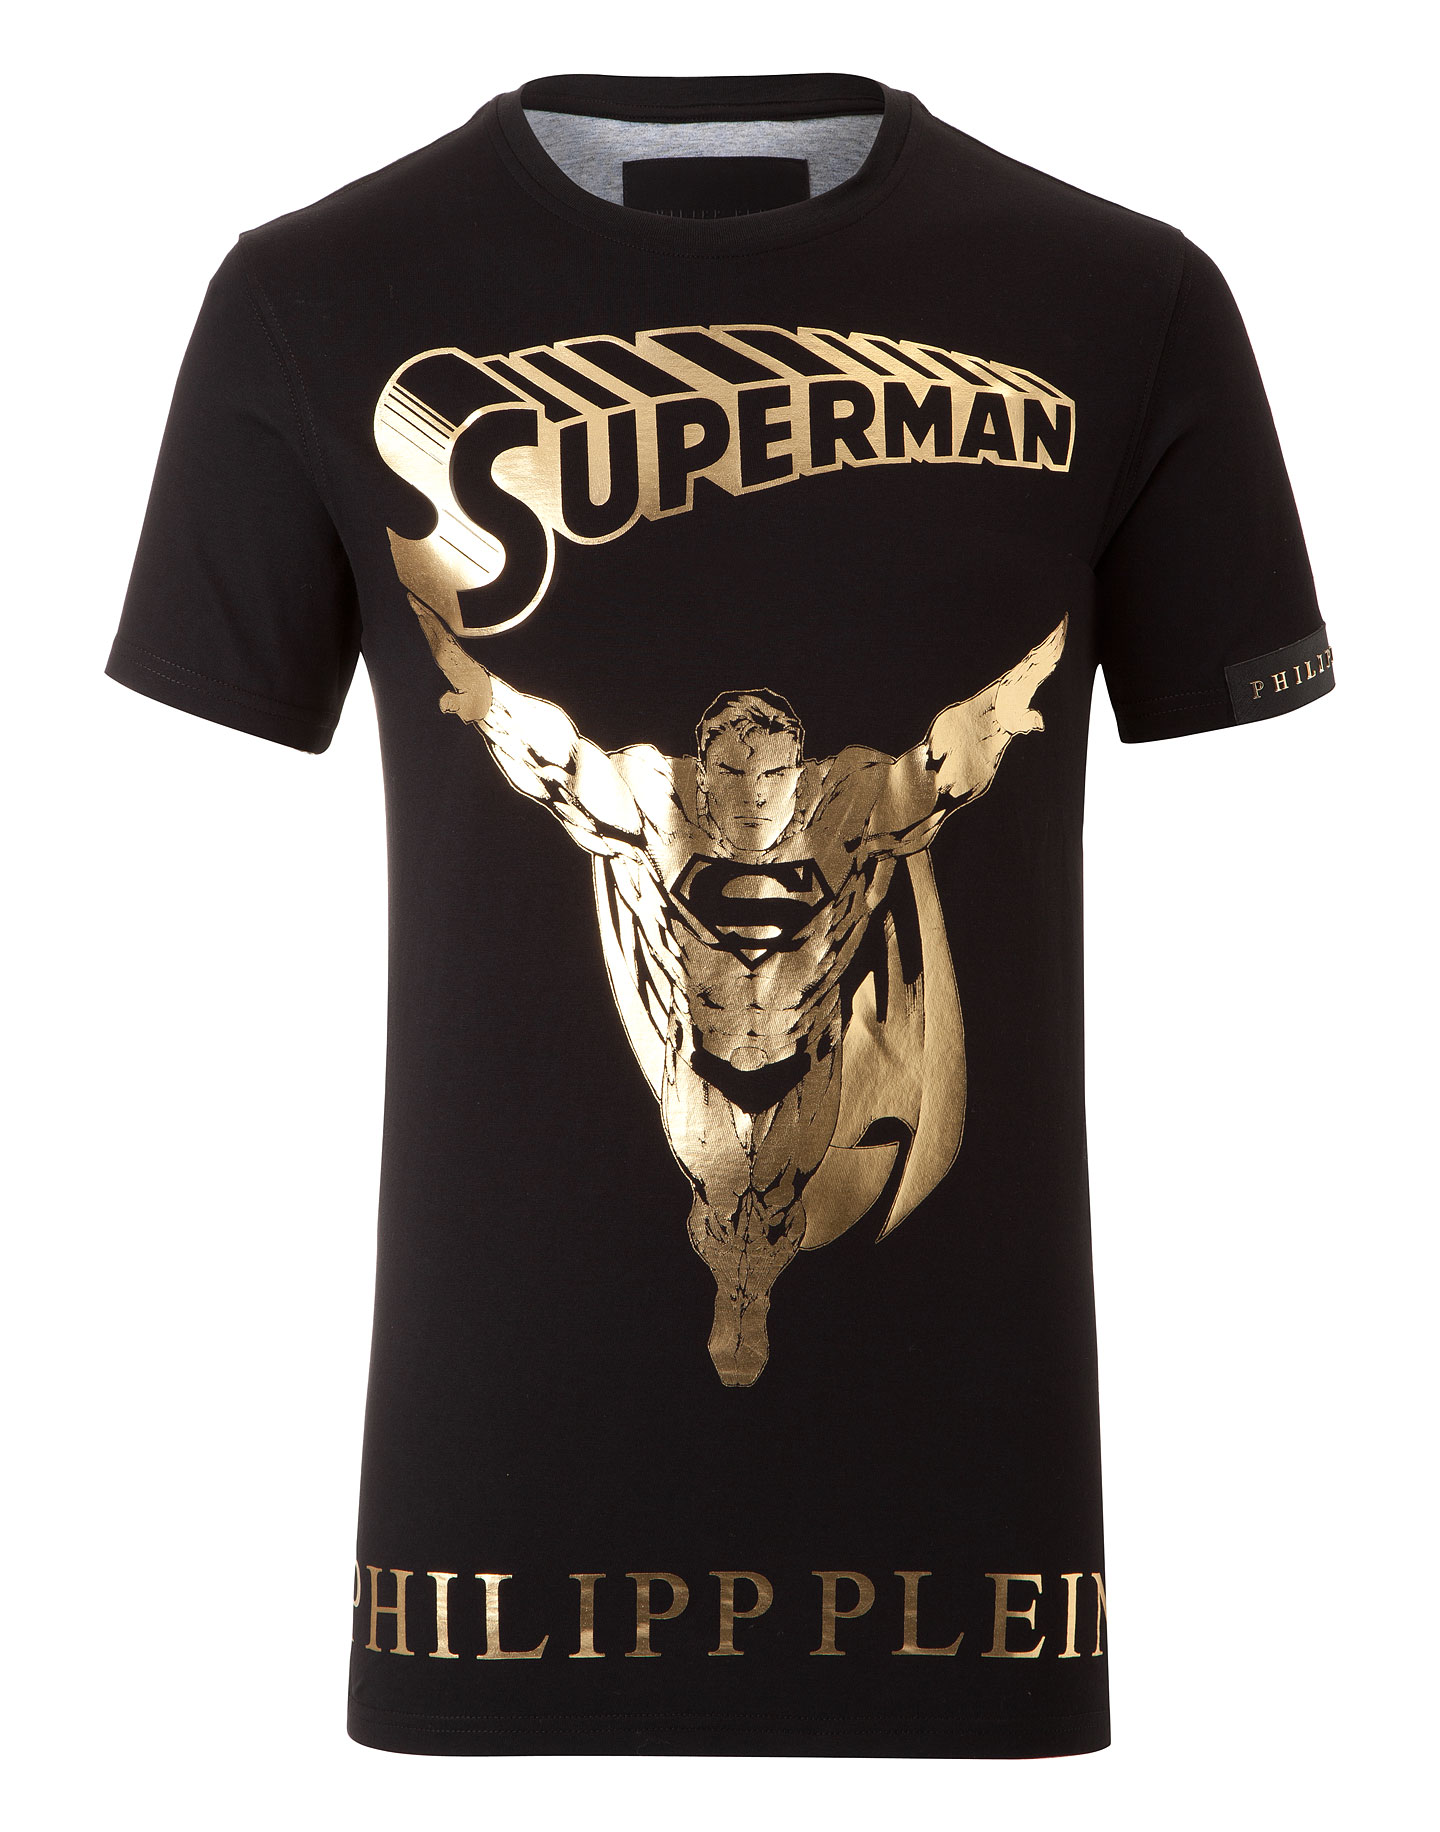 superman philipp plein